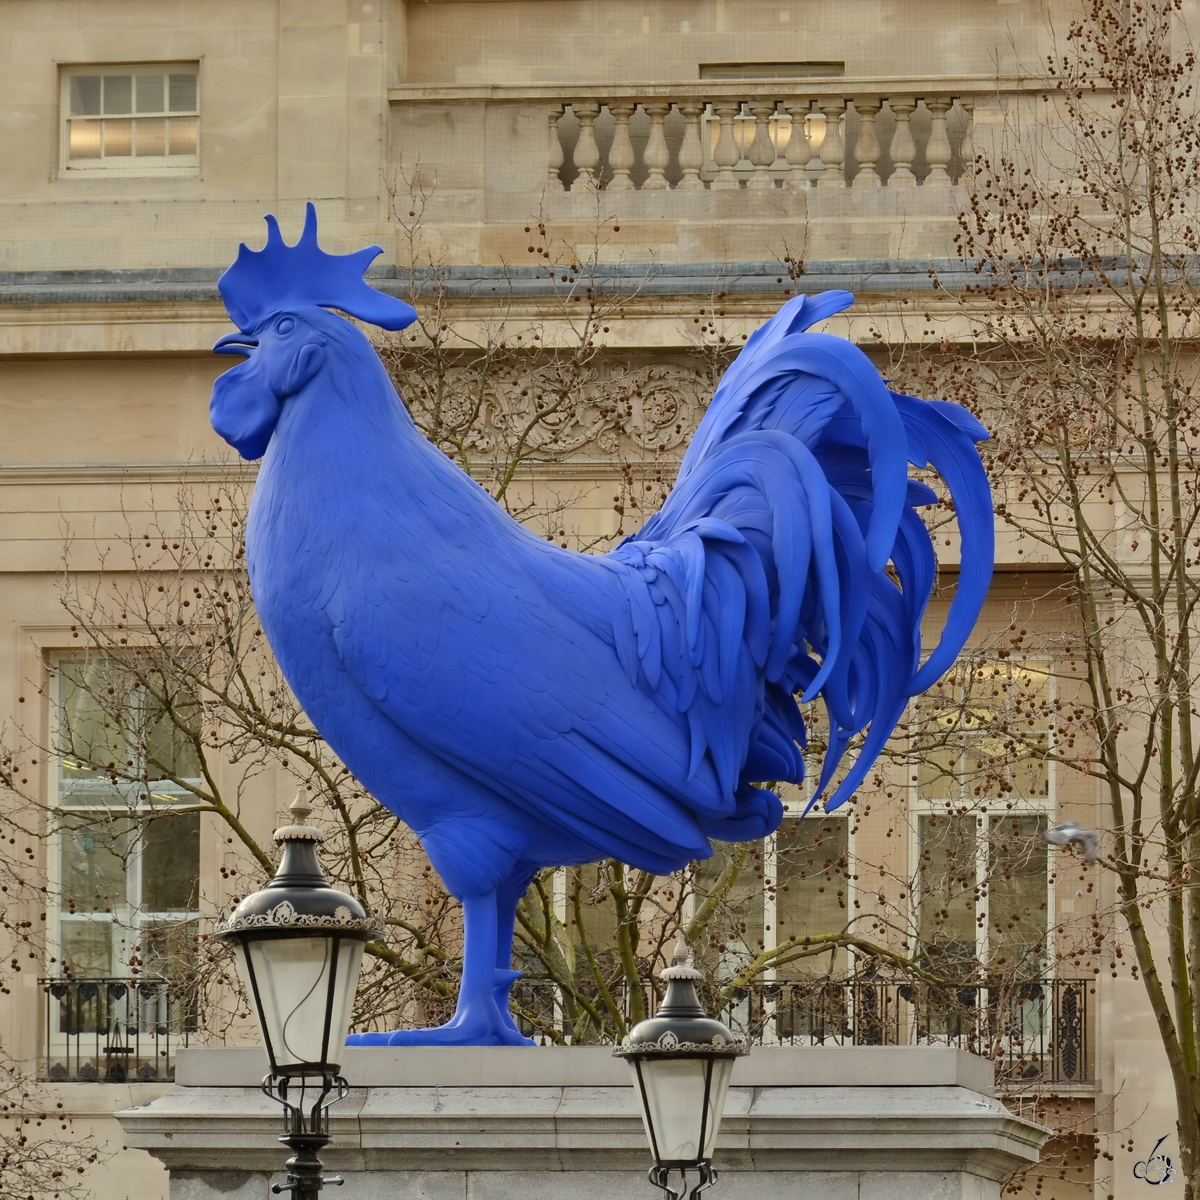 Ein berdimensionierter blauer Hahn auf dem Trafalgar Square in London. (Februar 2015)